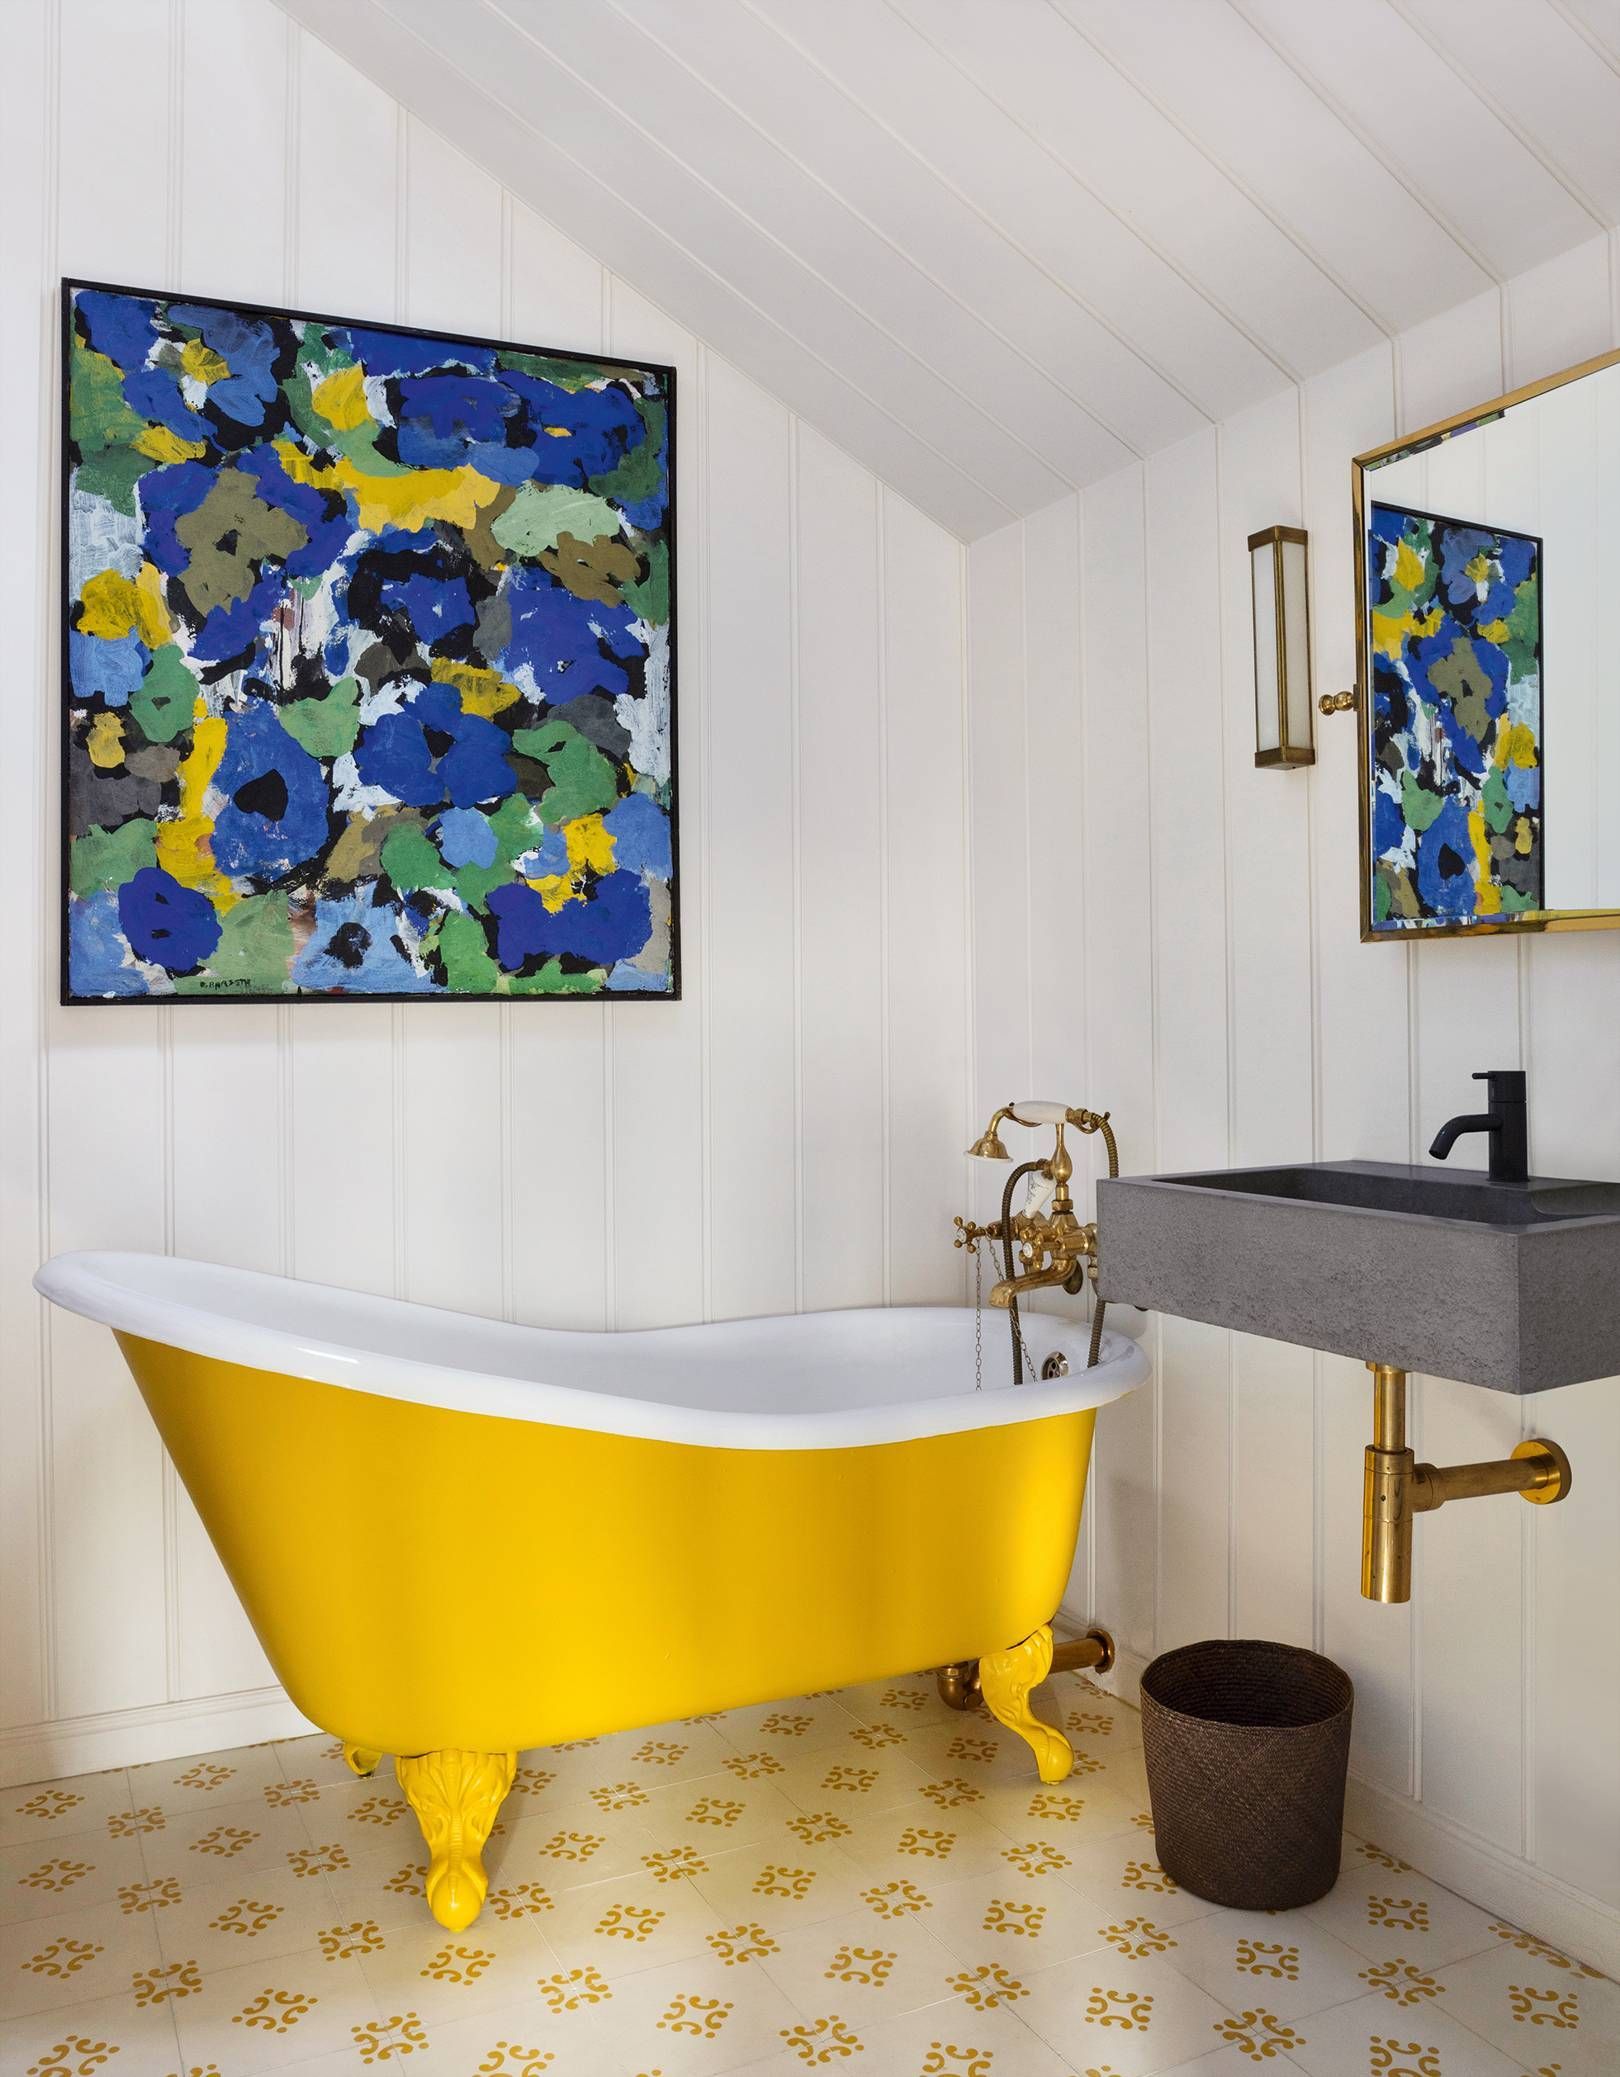 Cho căn phòng tắm gia đình thêm phần rực rỡ với điểm nhấn là chiếc bồn tắm đầy màu sắc - Ảnh 2.